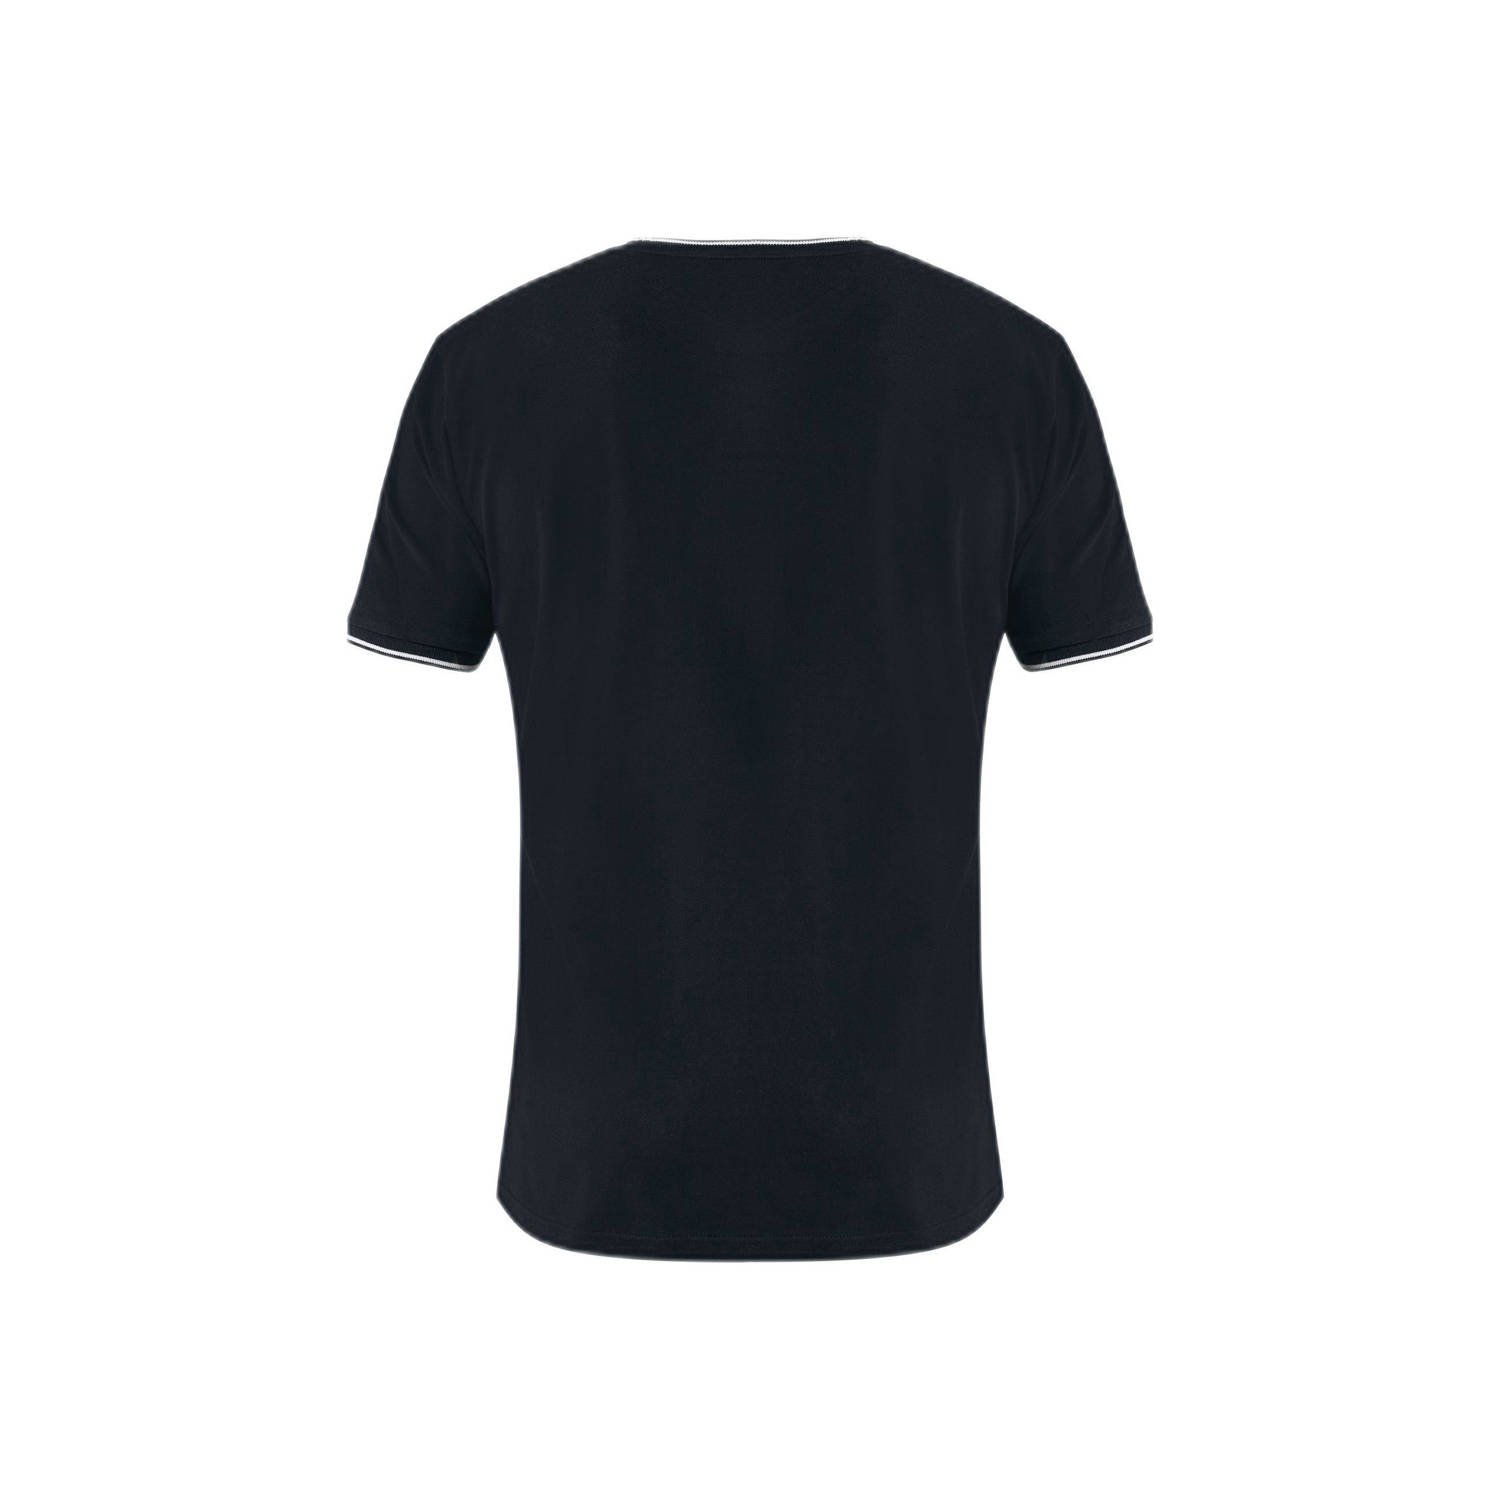 Mexx T-shirt met logo zwart